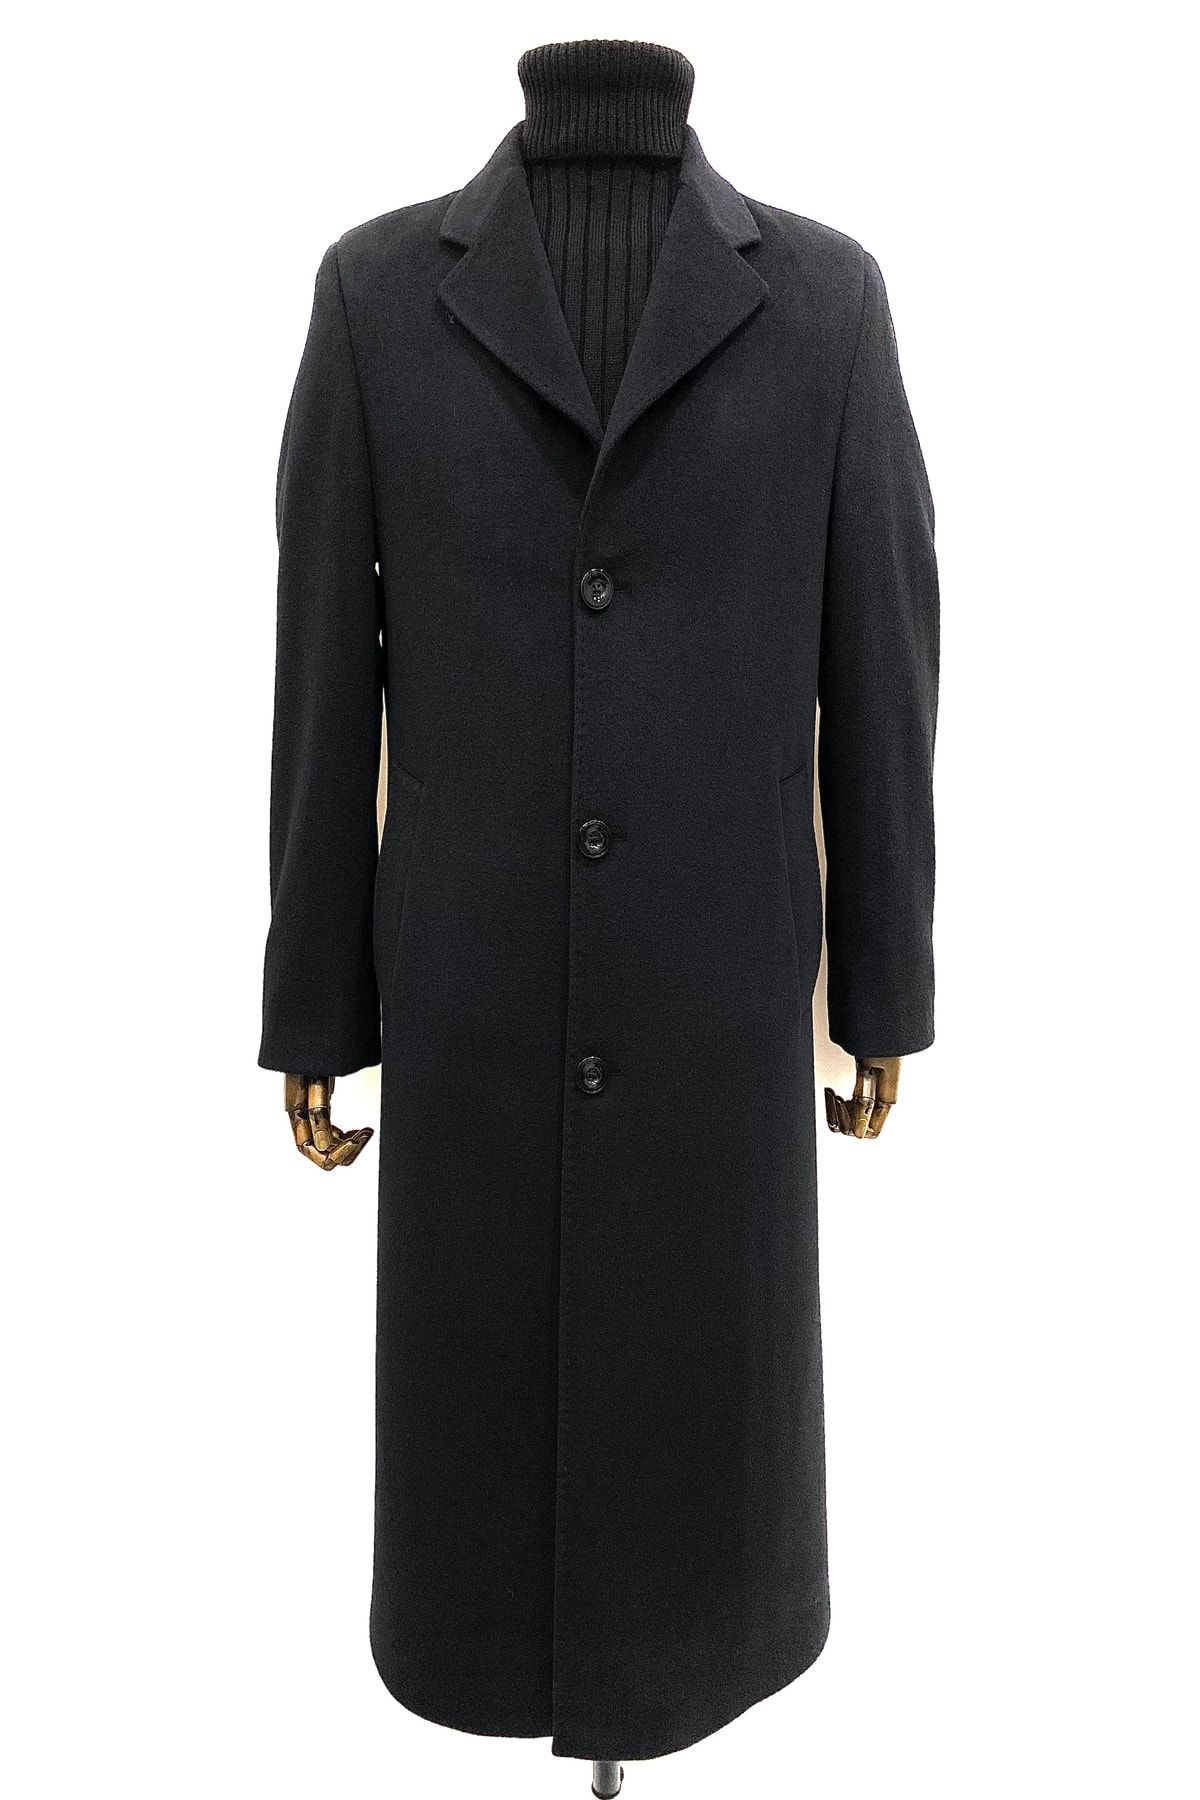 ŞAN GİYİM Erkek Siyah Ceket Yaka Uzun Palto